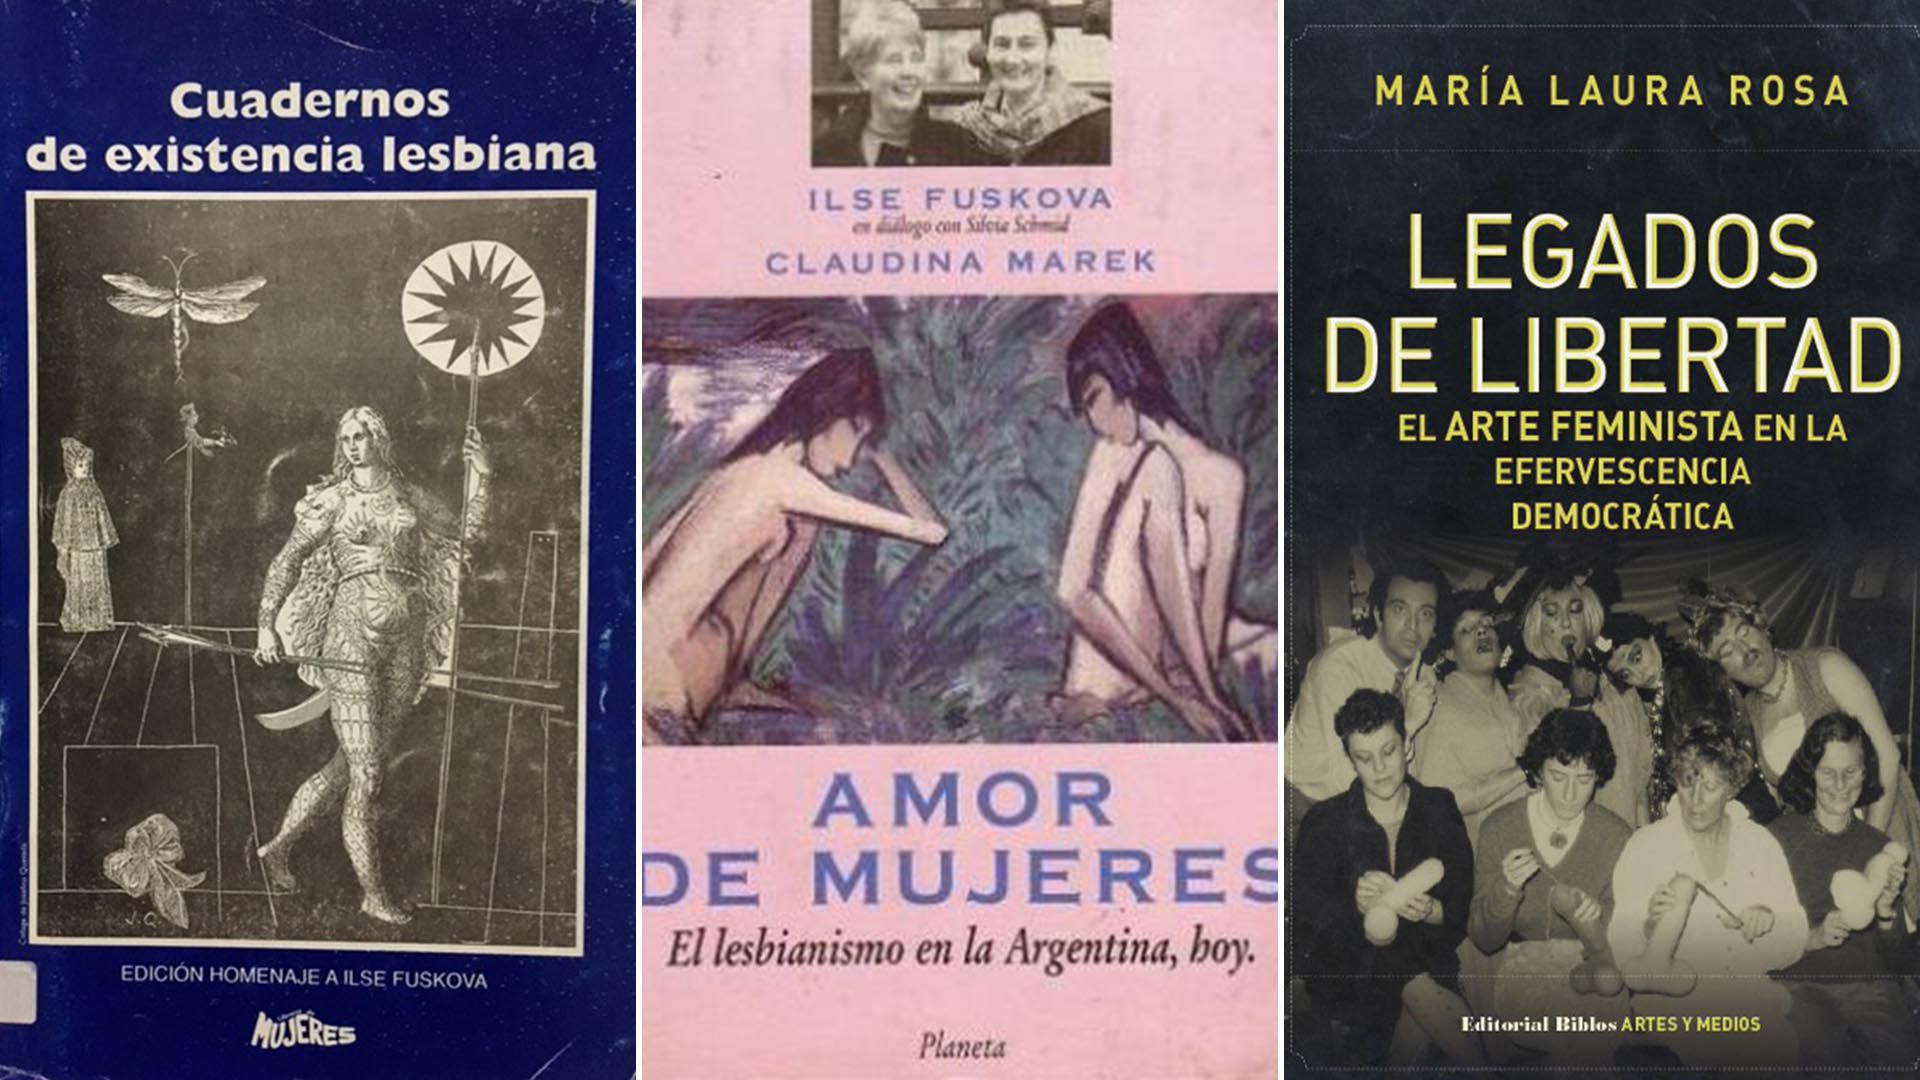 Cuaderno de existencia lesbiana (Librería de Mujeres), Amor de mujeres. El lesbianismo en la Argentina, hoy (Planeta) y Legados de libertad: el arte feminista en la efervescencia democrática (Editorial Biblos)